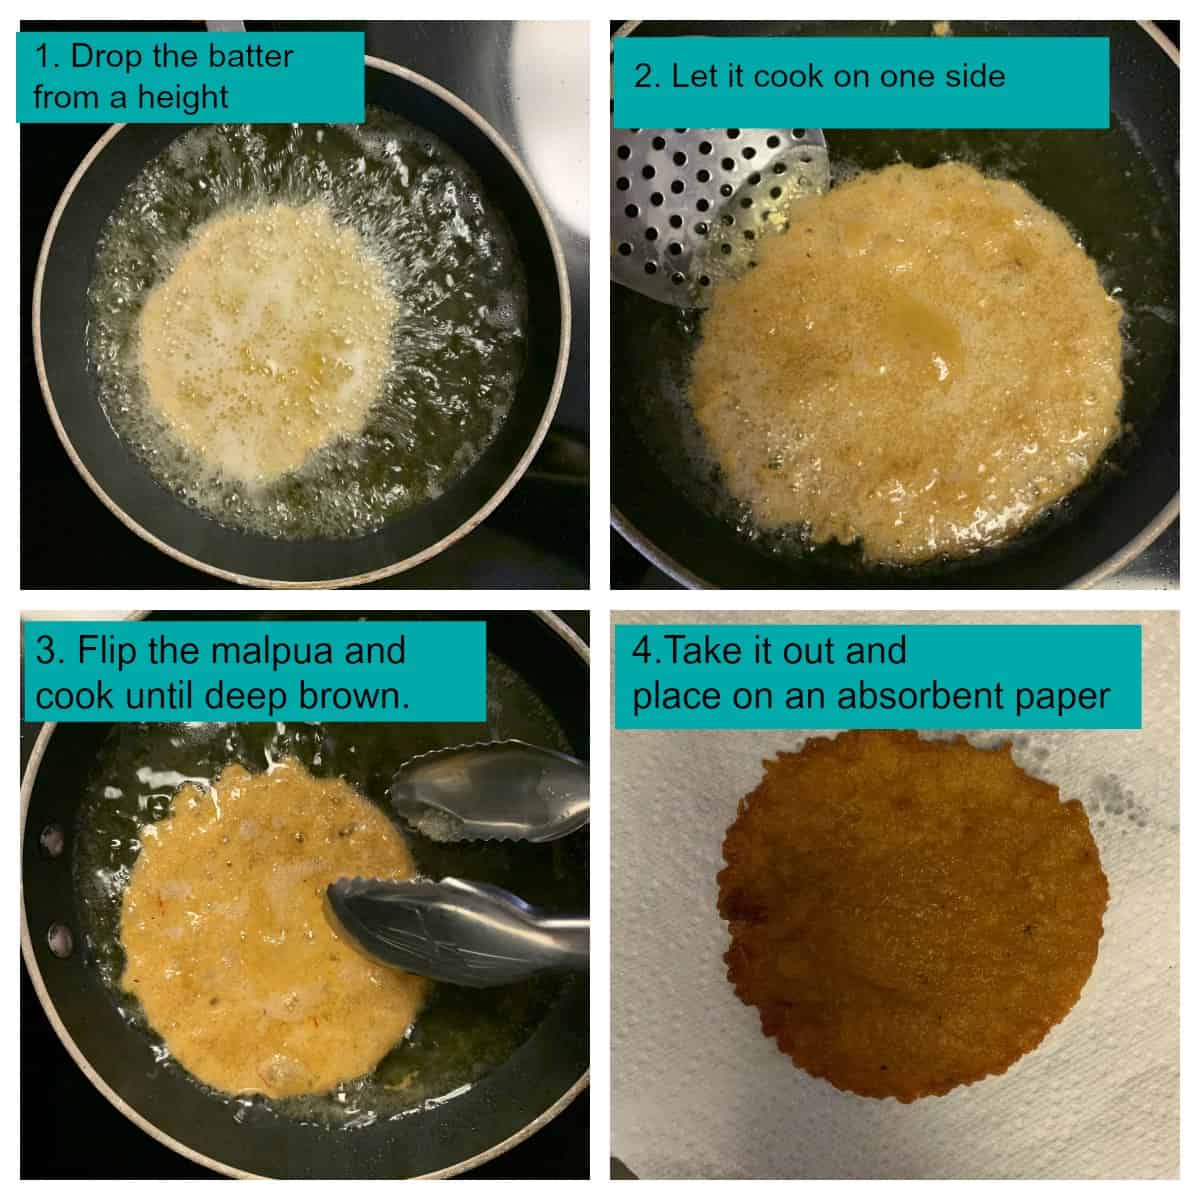 Step by step method to fry malpuas in ghee